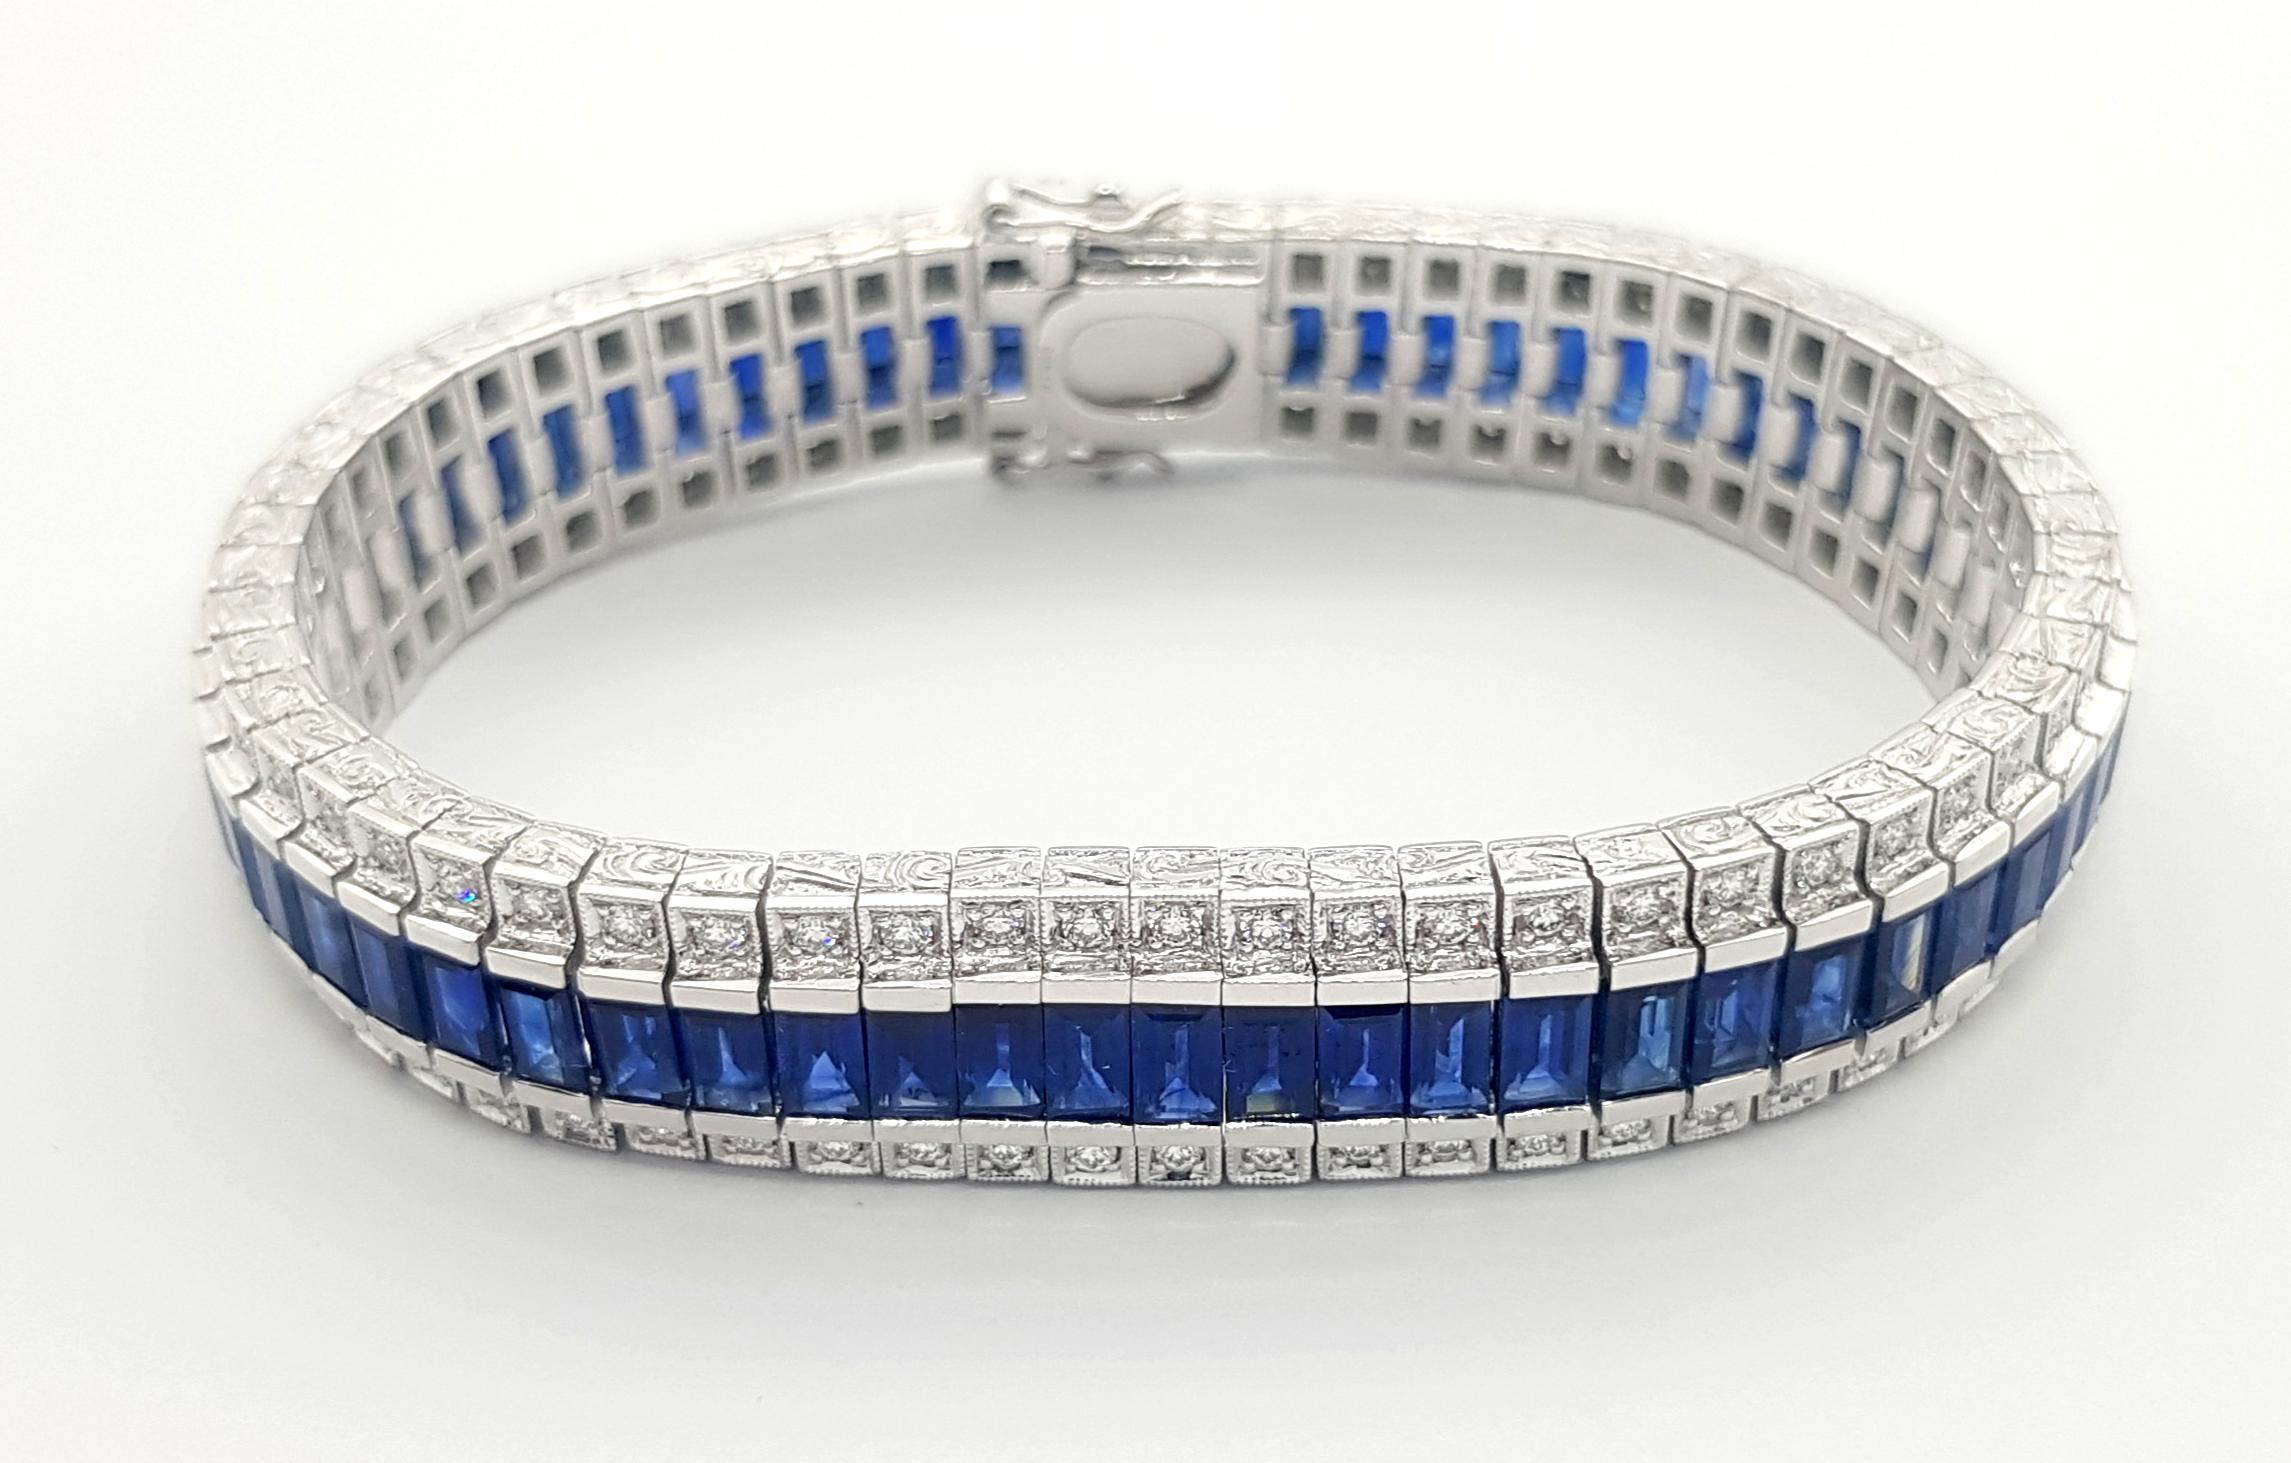 Blauer Saphir 19,90 Karat mit Diamant 2,07 Karat Armband in Platin 950 Fassung

Breite:  1,2 cm 
Länge: 18,0 cm
Gesamtgewicht: 103,14 Gramm

